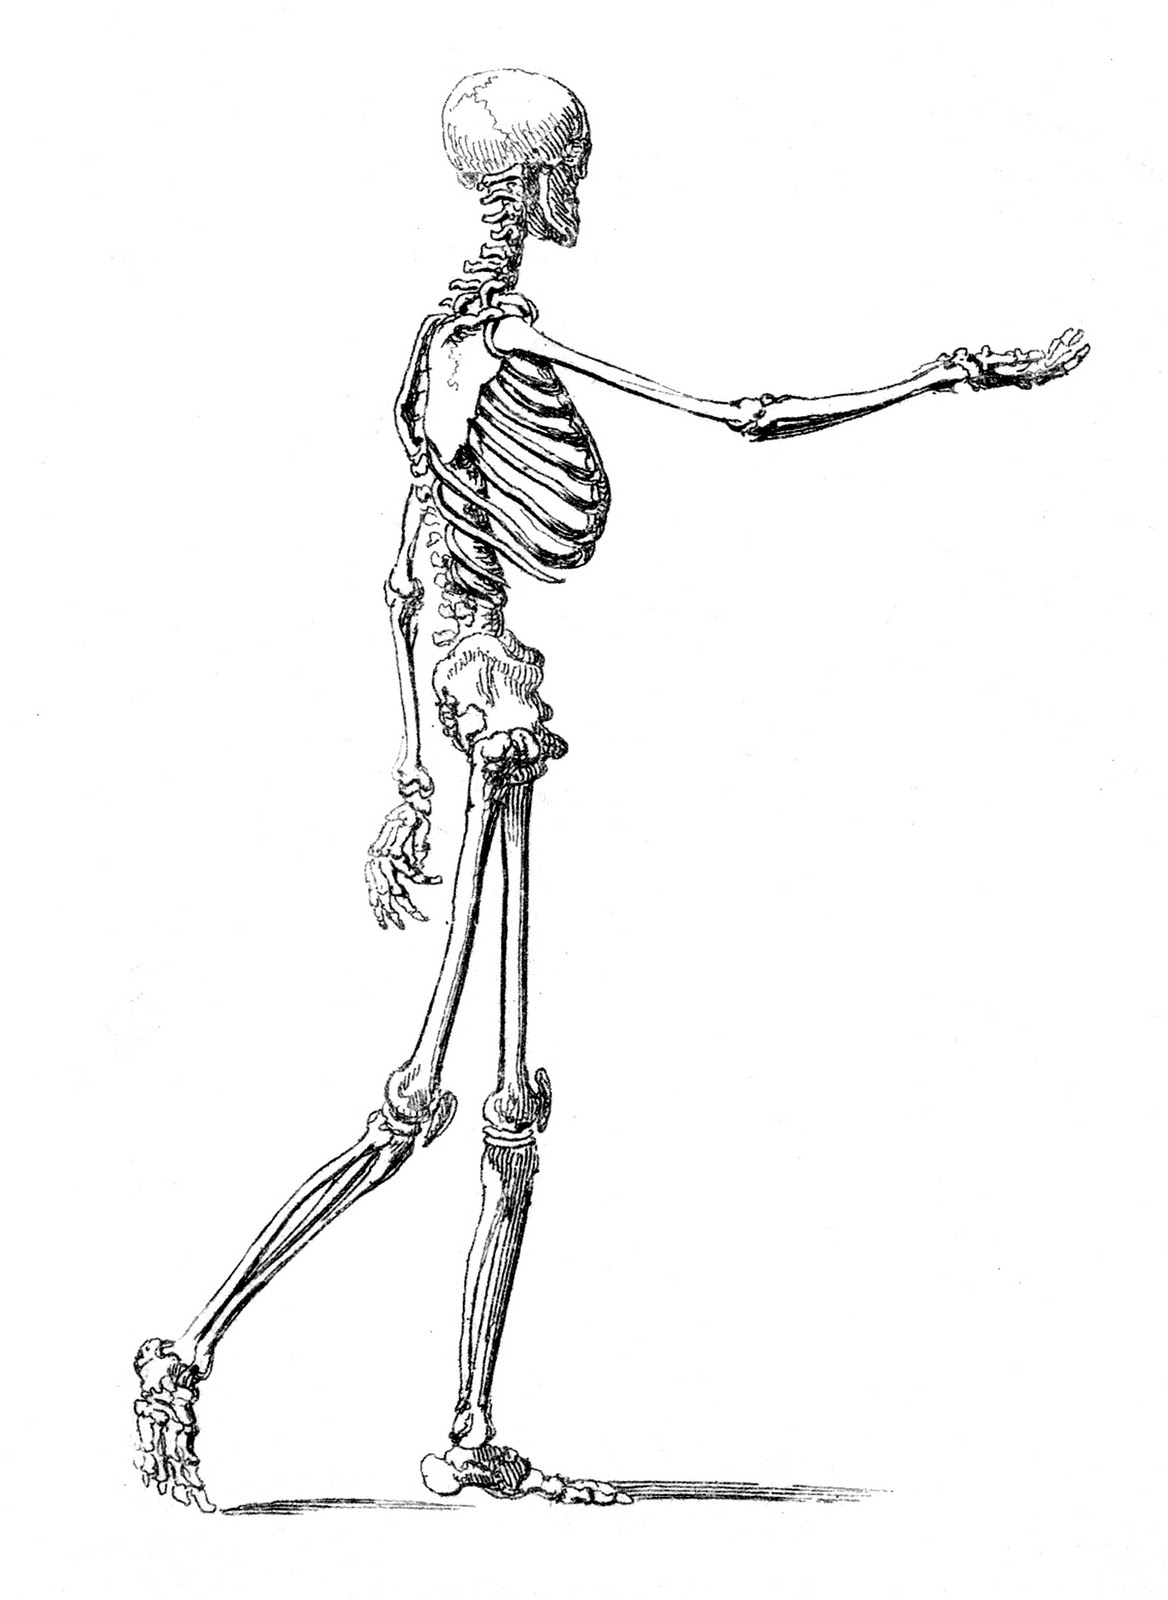 skeletonmanwalking-graphicsfairy009bw.jpg